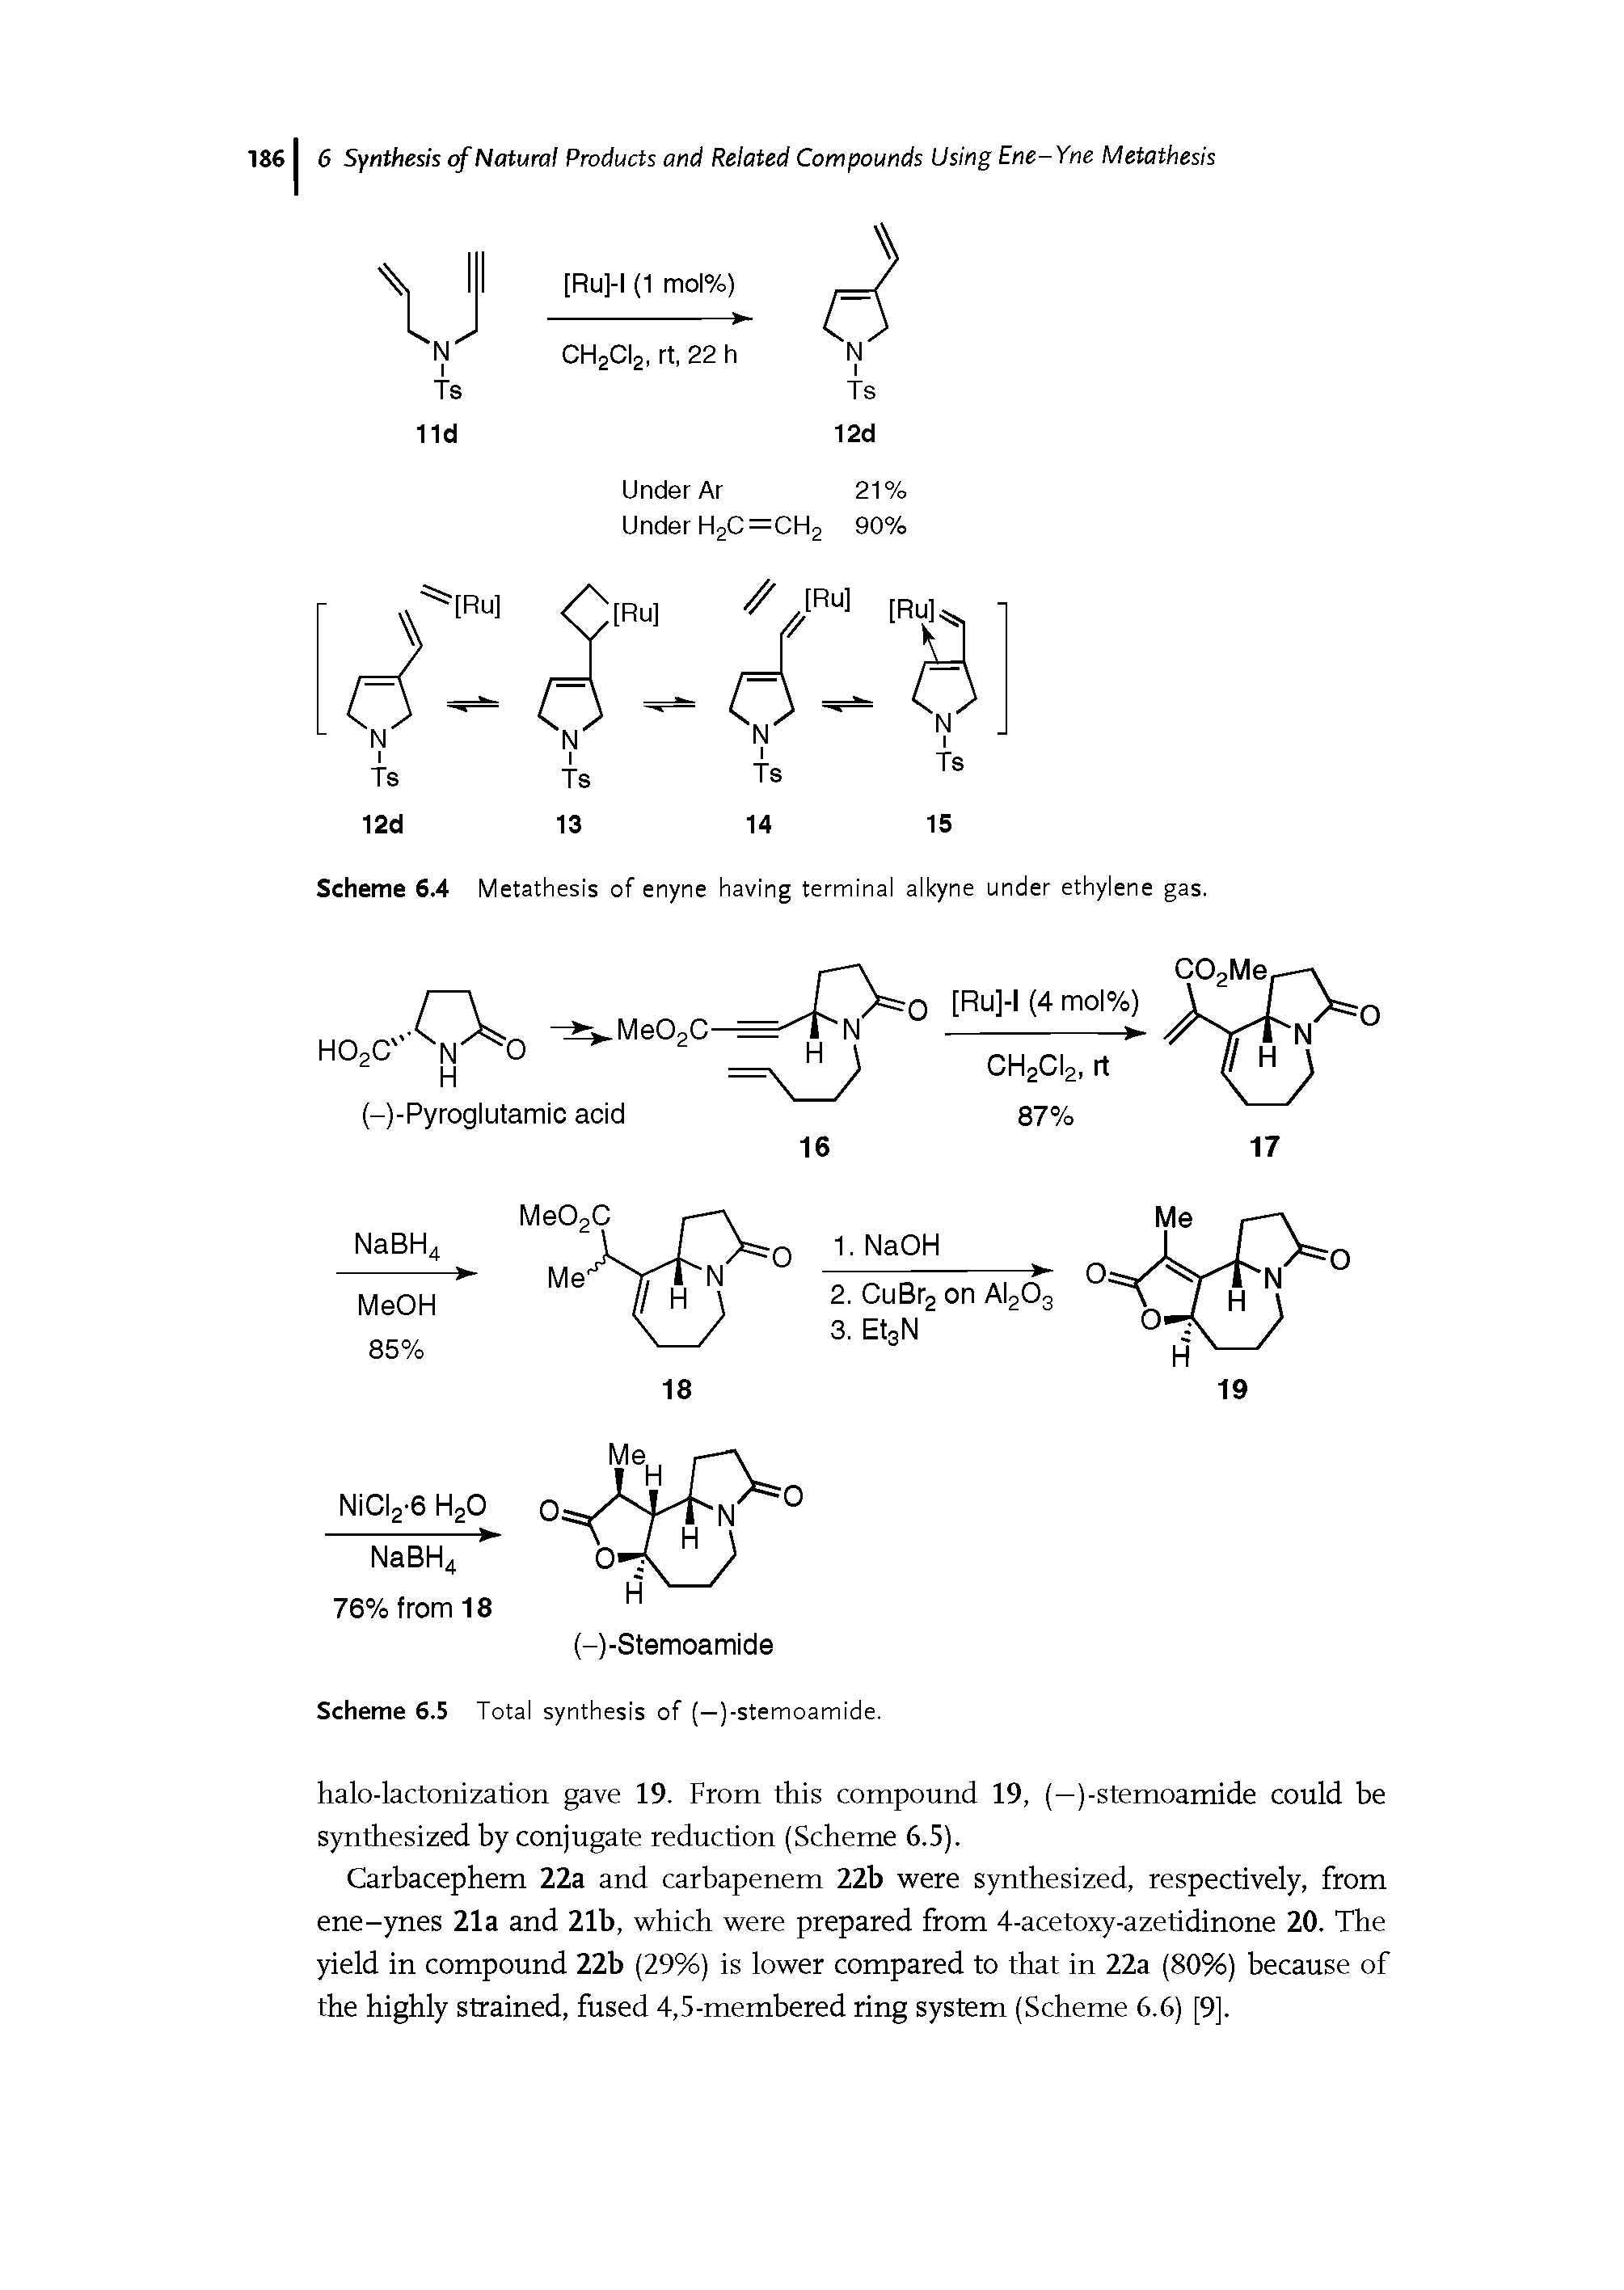 Scheme 6.4 Metathesis of enyne having terminai aikyne under ethylene gas.